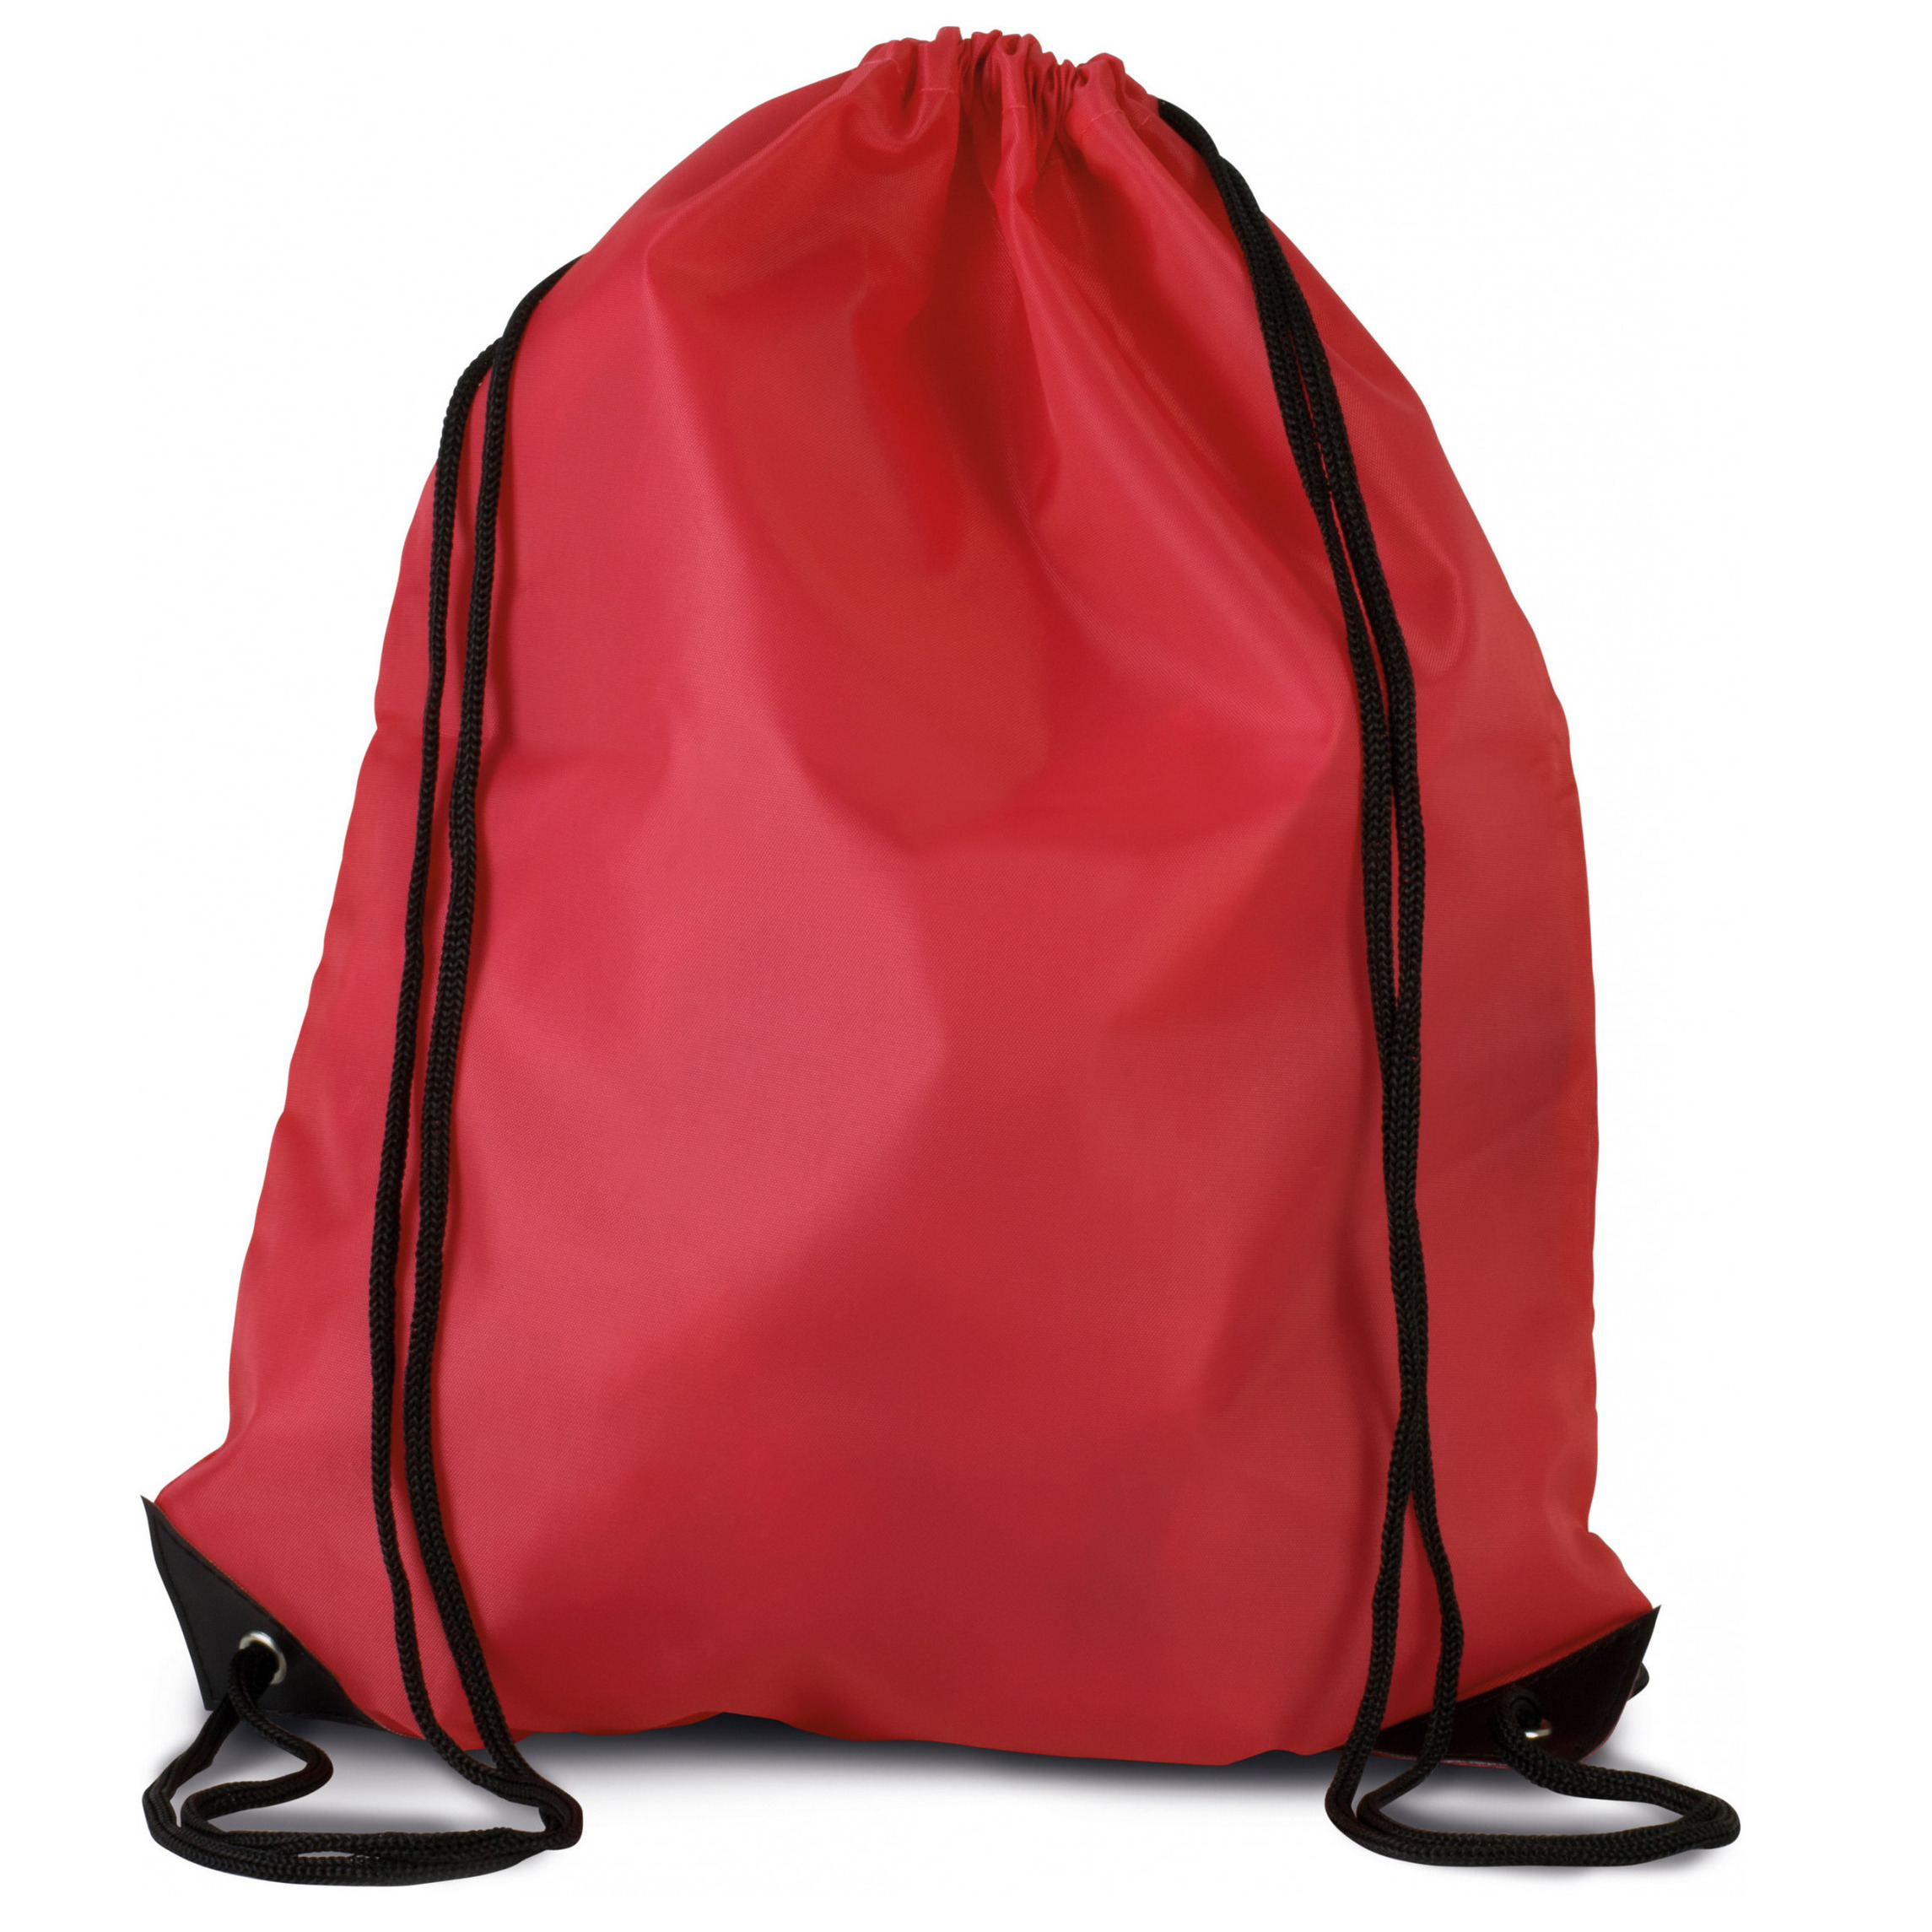 Sport gymtas-draagtas rood met rijgkoord 34 x 44 cm van polyester